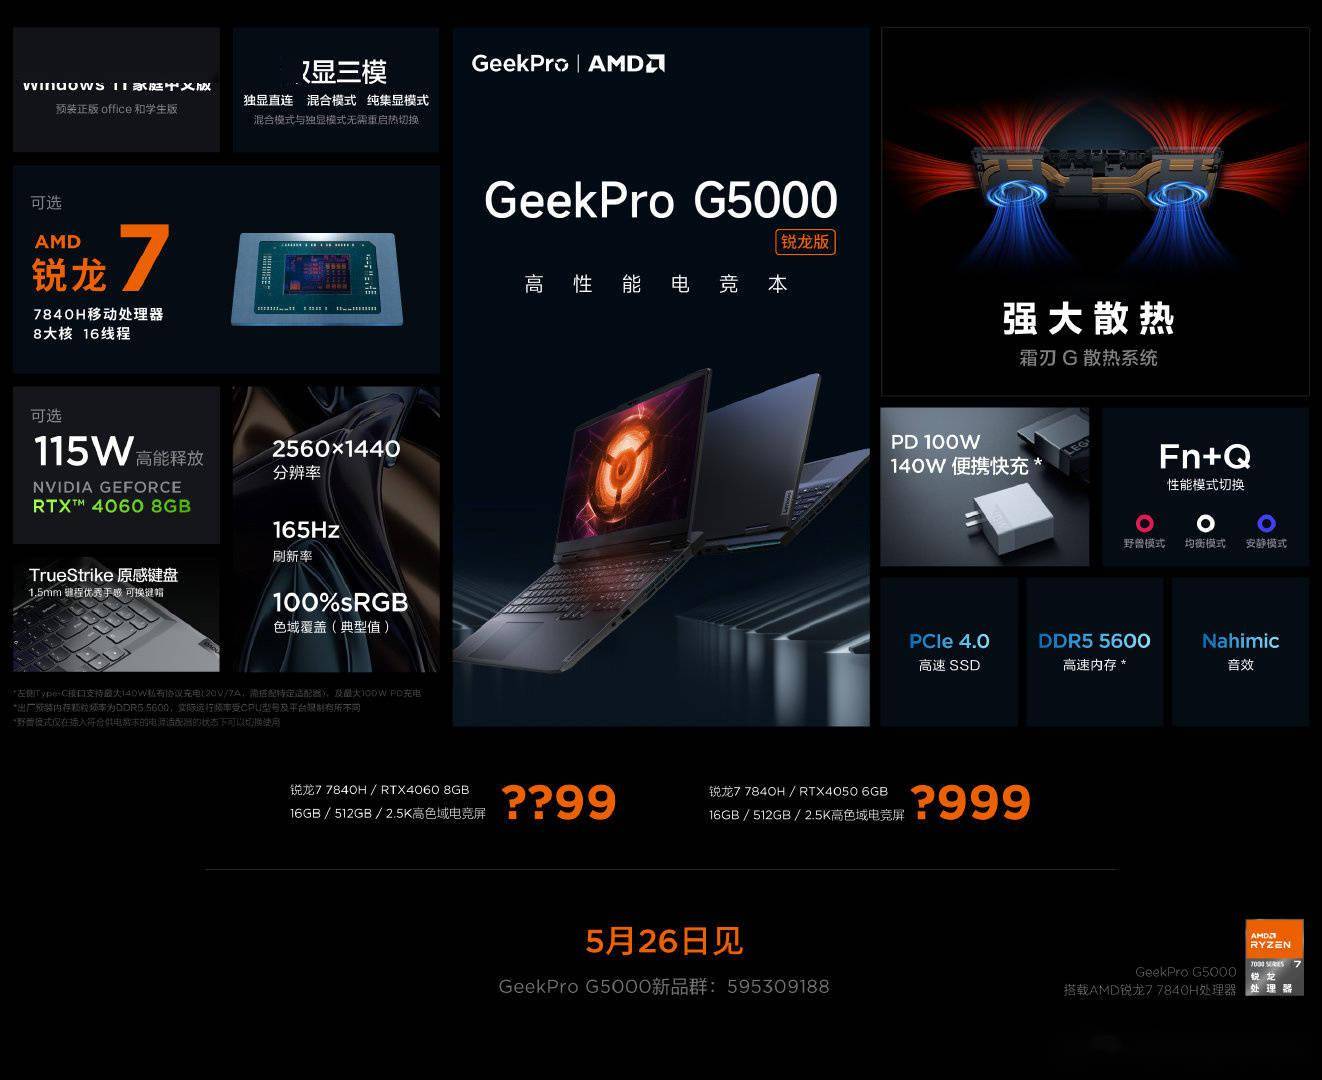 联想GeekPro G5000锐龙版笔记本将于明日公布售价 可选RTX 4050和RTX 4060